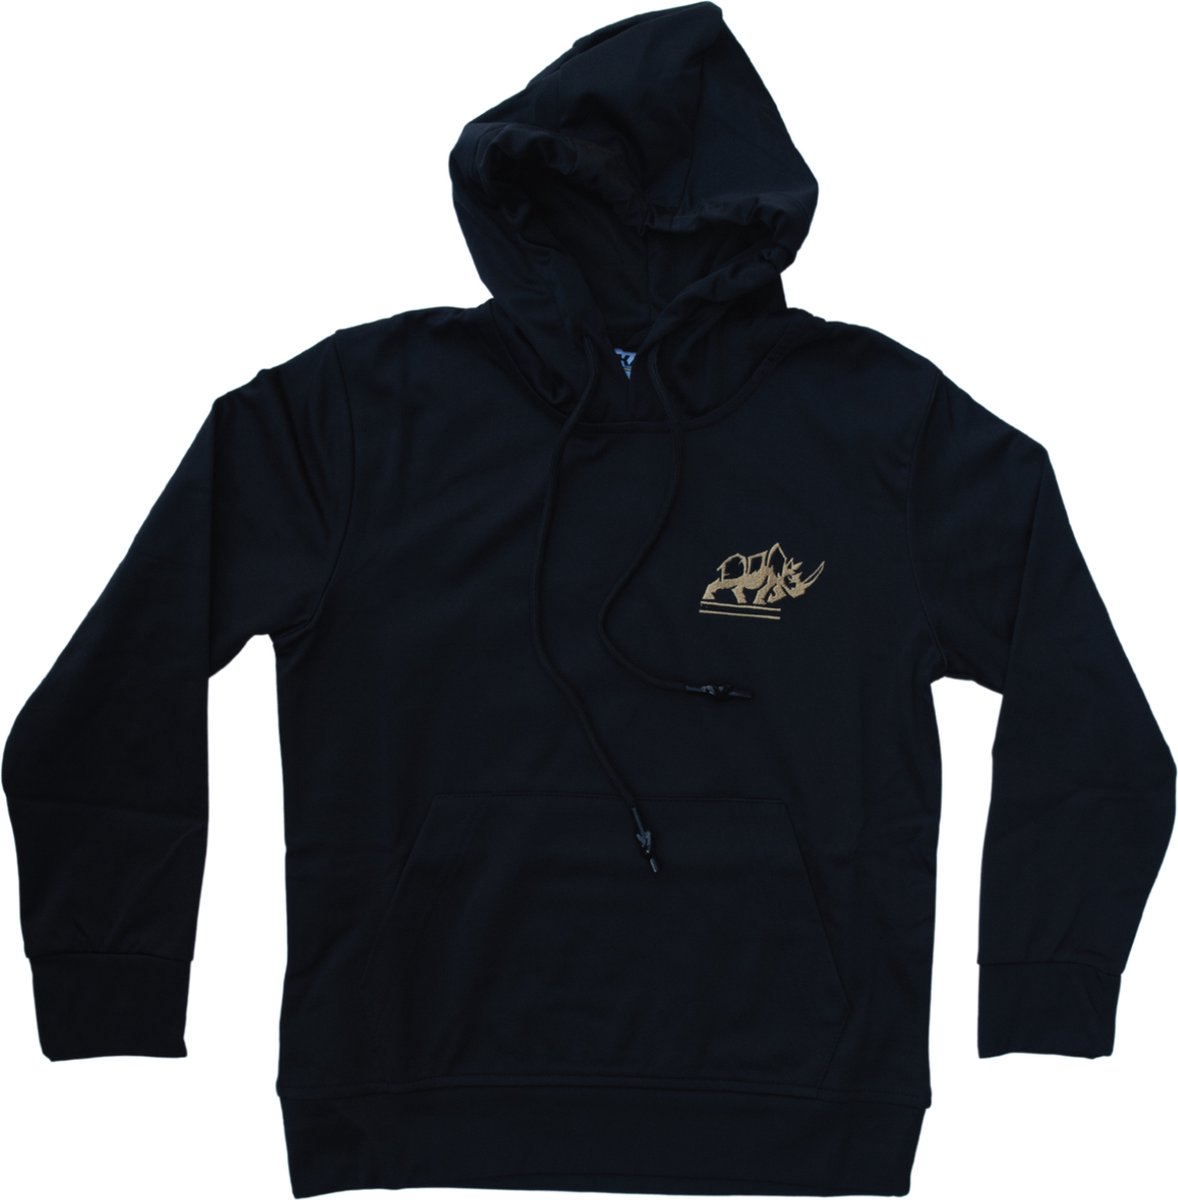 KAET - hoodie - unisex - Zwart - maat - S - outdoor - sportief - trui met capuchon - zacht gevoerd